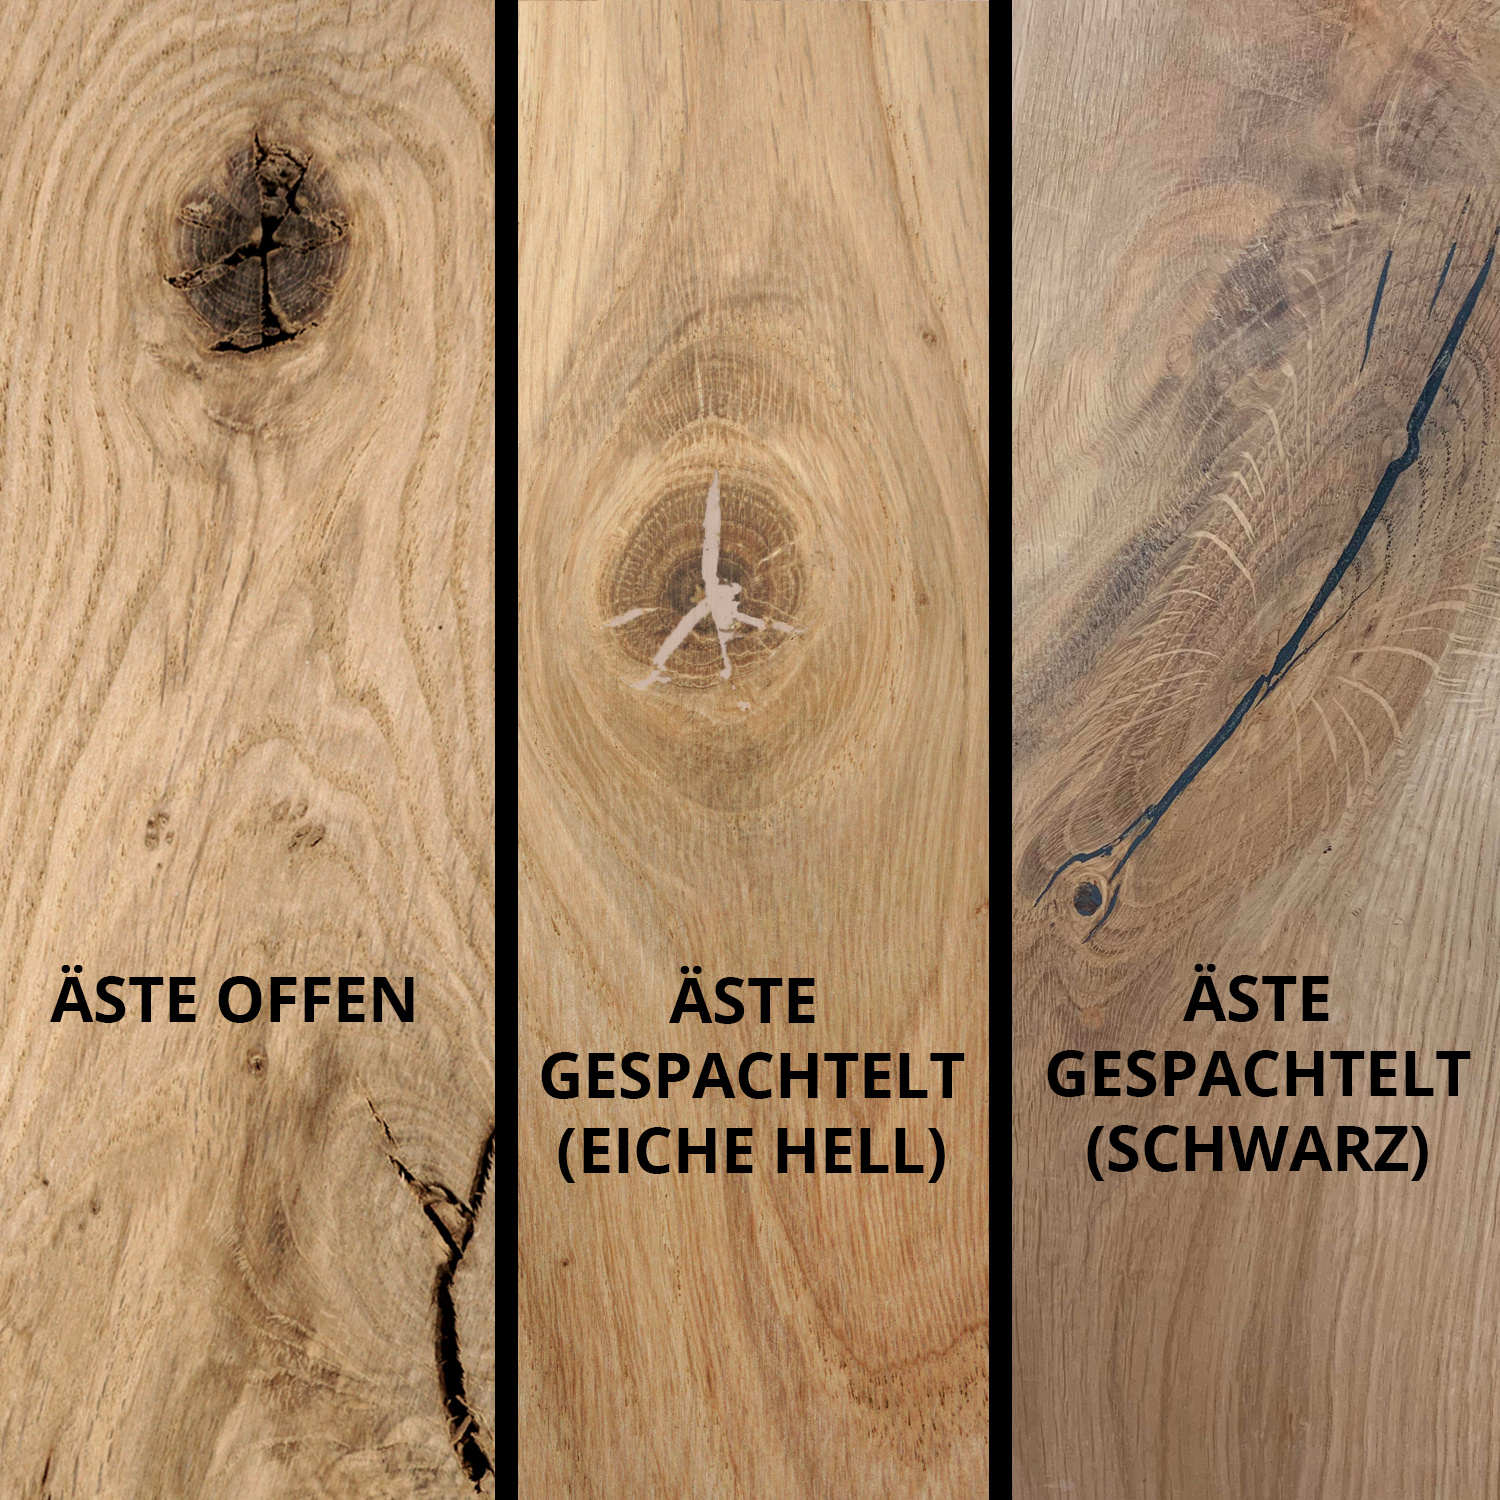  Tischplatte Eiche rund nach Maß - 8 cm dick (2-lagig) - Eichenholz rustikal - Durchmesser: 30 - 180 cm - Eiche Tischplatte rund massiv - verleimt & künstlich getrocknet (HF 8-12%)